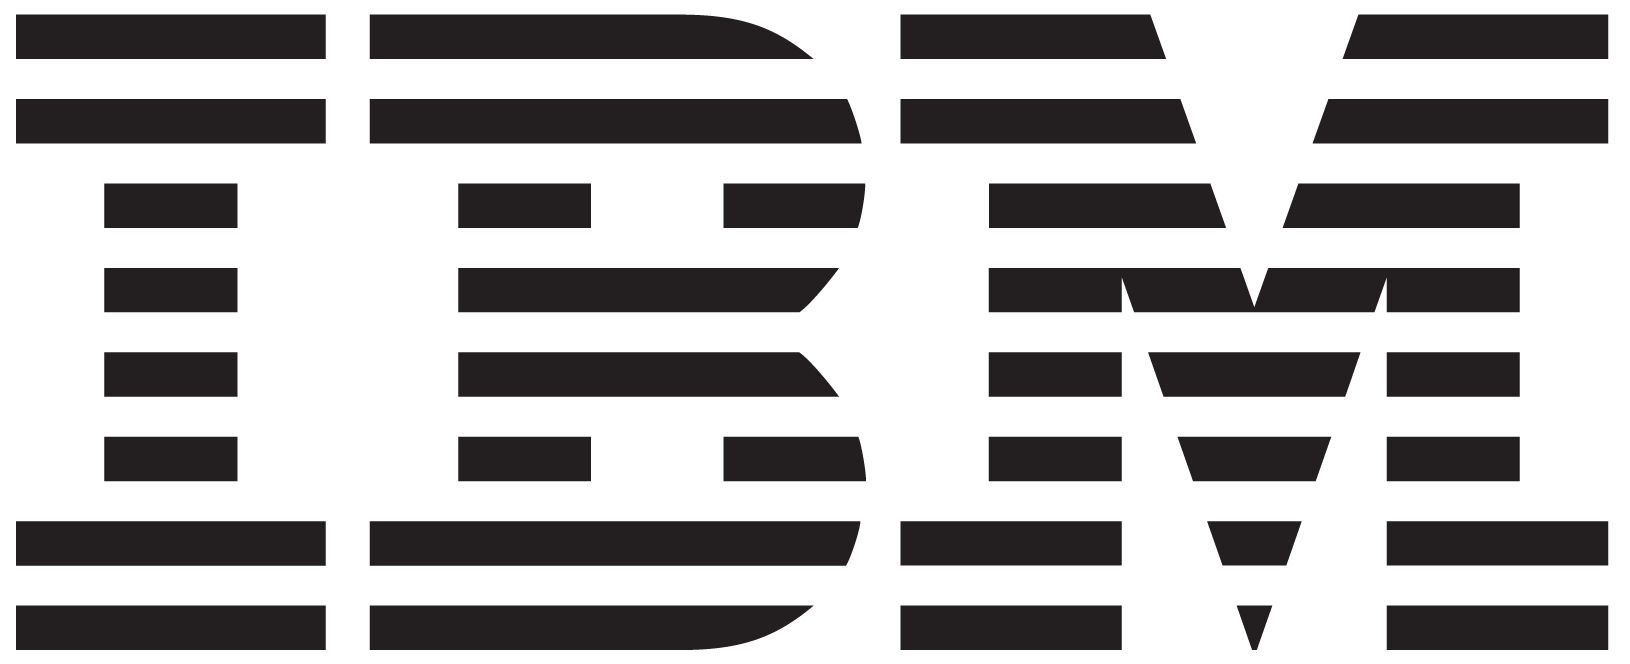 IBM Blue Diamond: Status